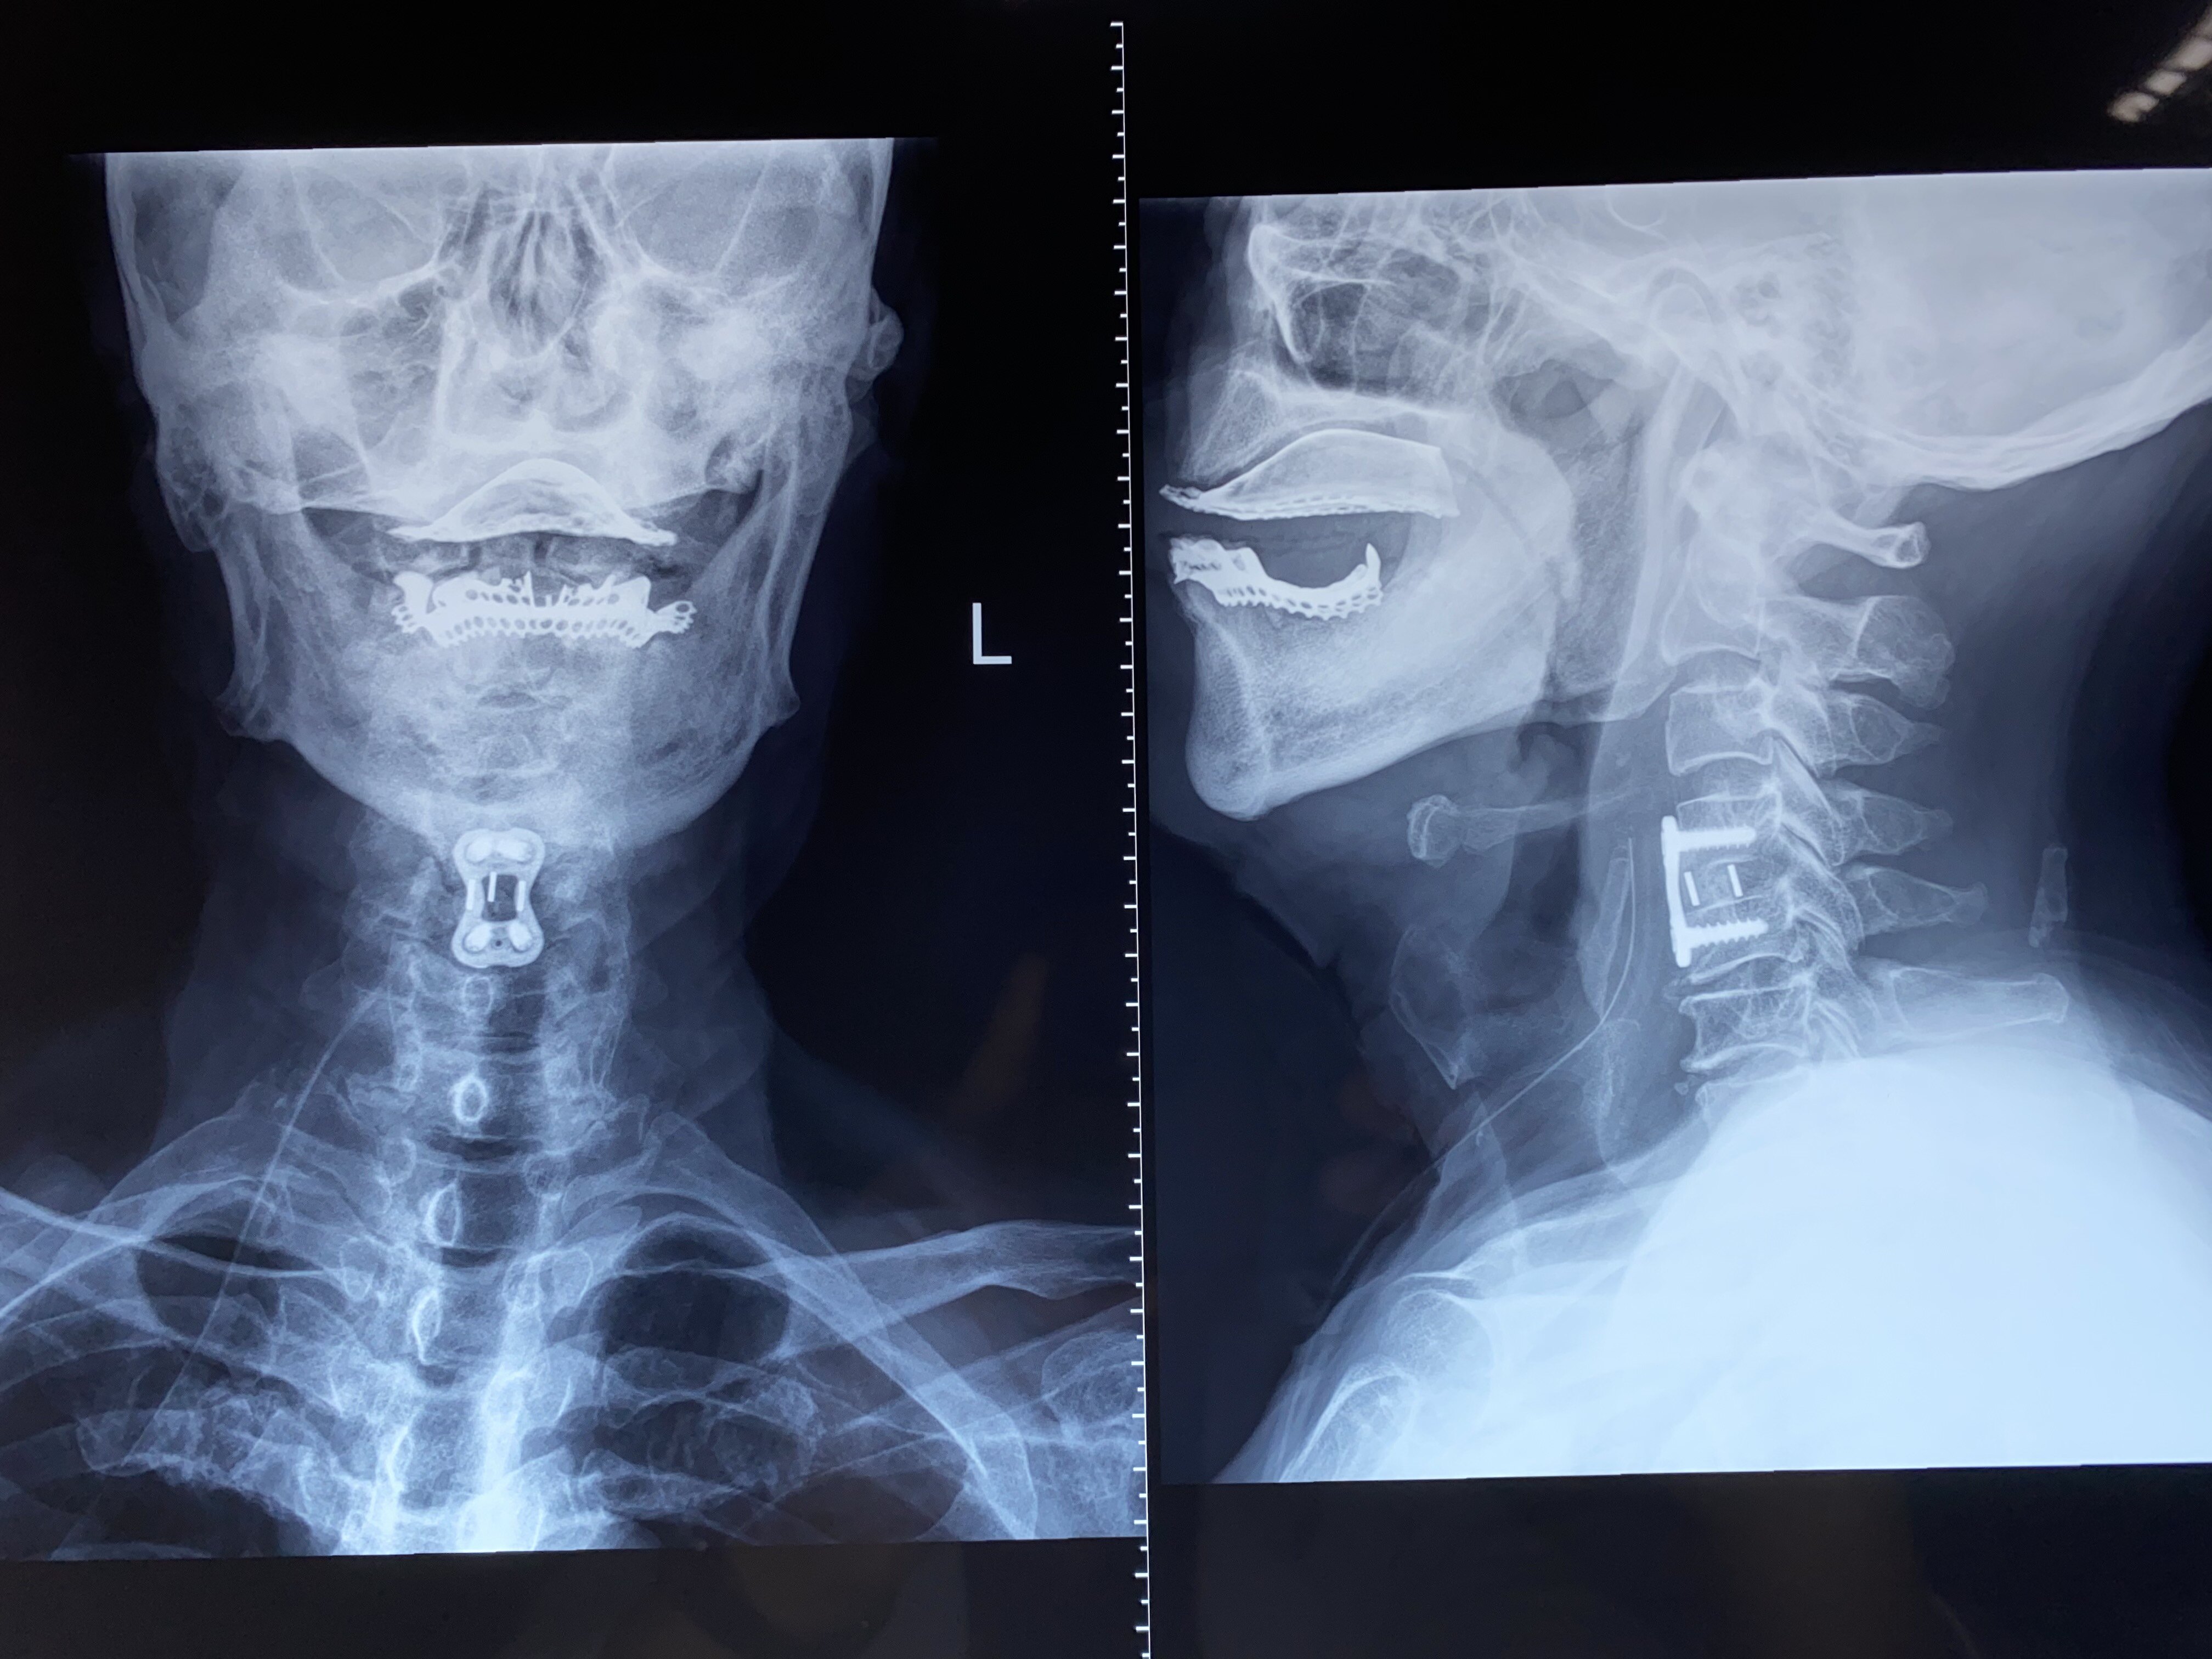 术中取出的压迫脊髓的椎间盘及骨赘组织颈椎侧位片示:颈椎生理曲度